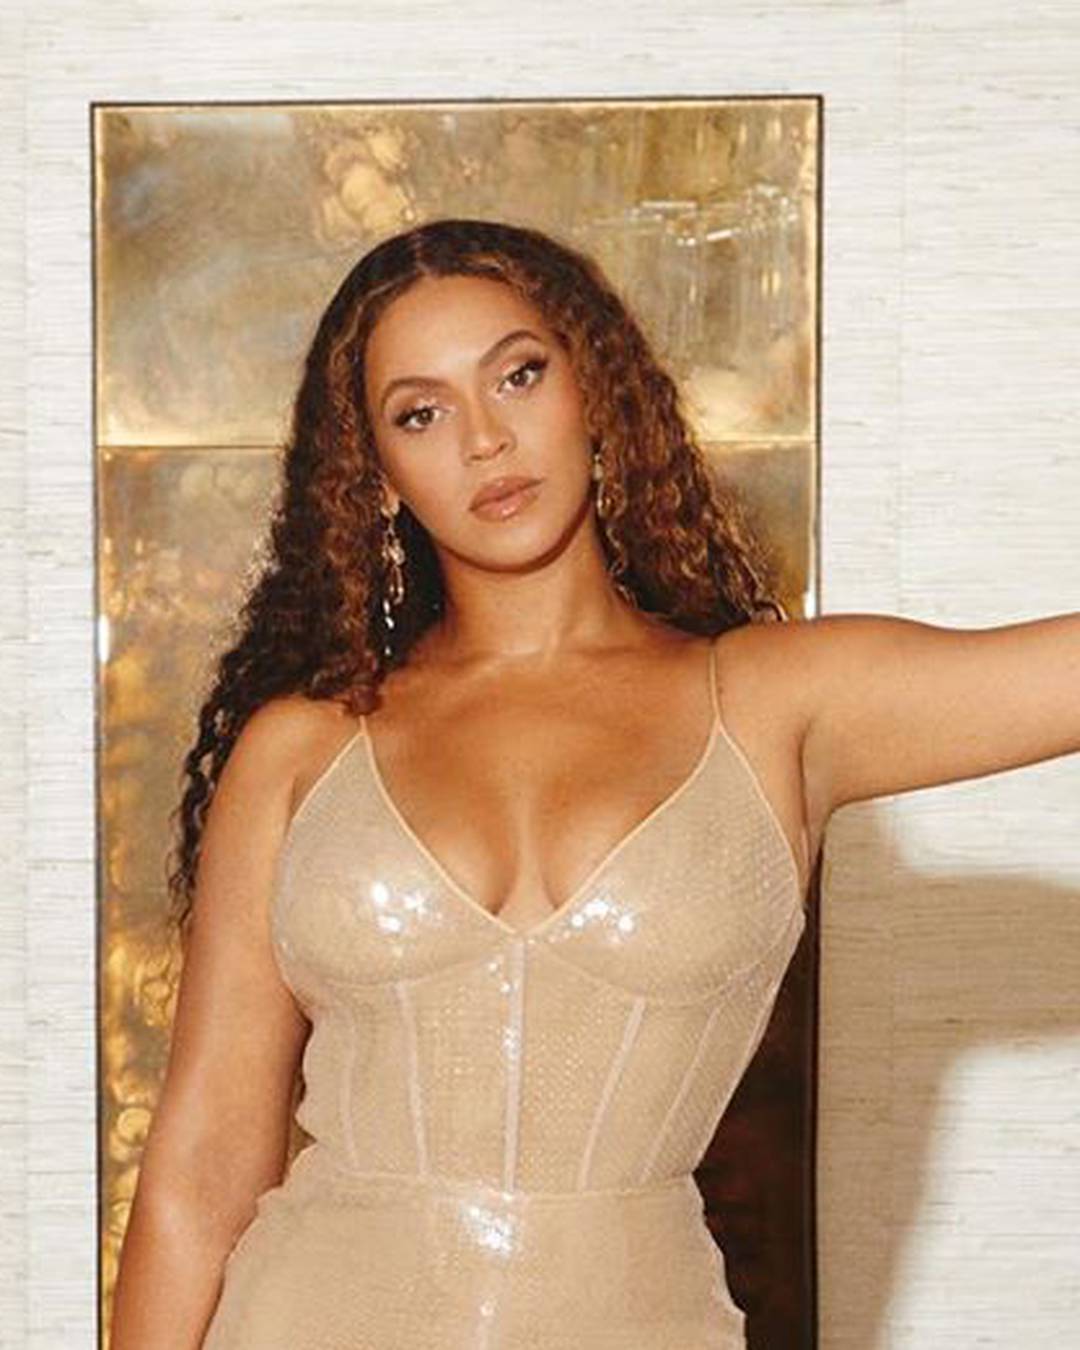 Beyonce dobila pokoju kilu, ali i dalje 'plijeni' pažnju: 'Kraljica'